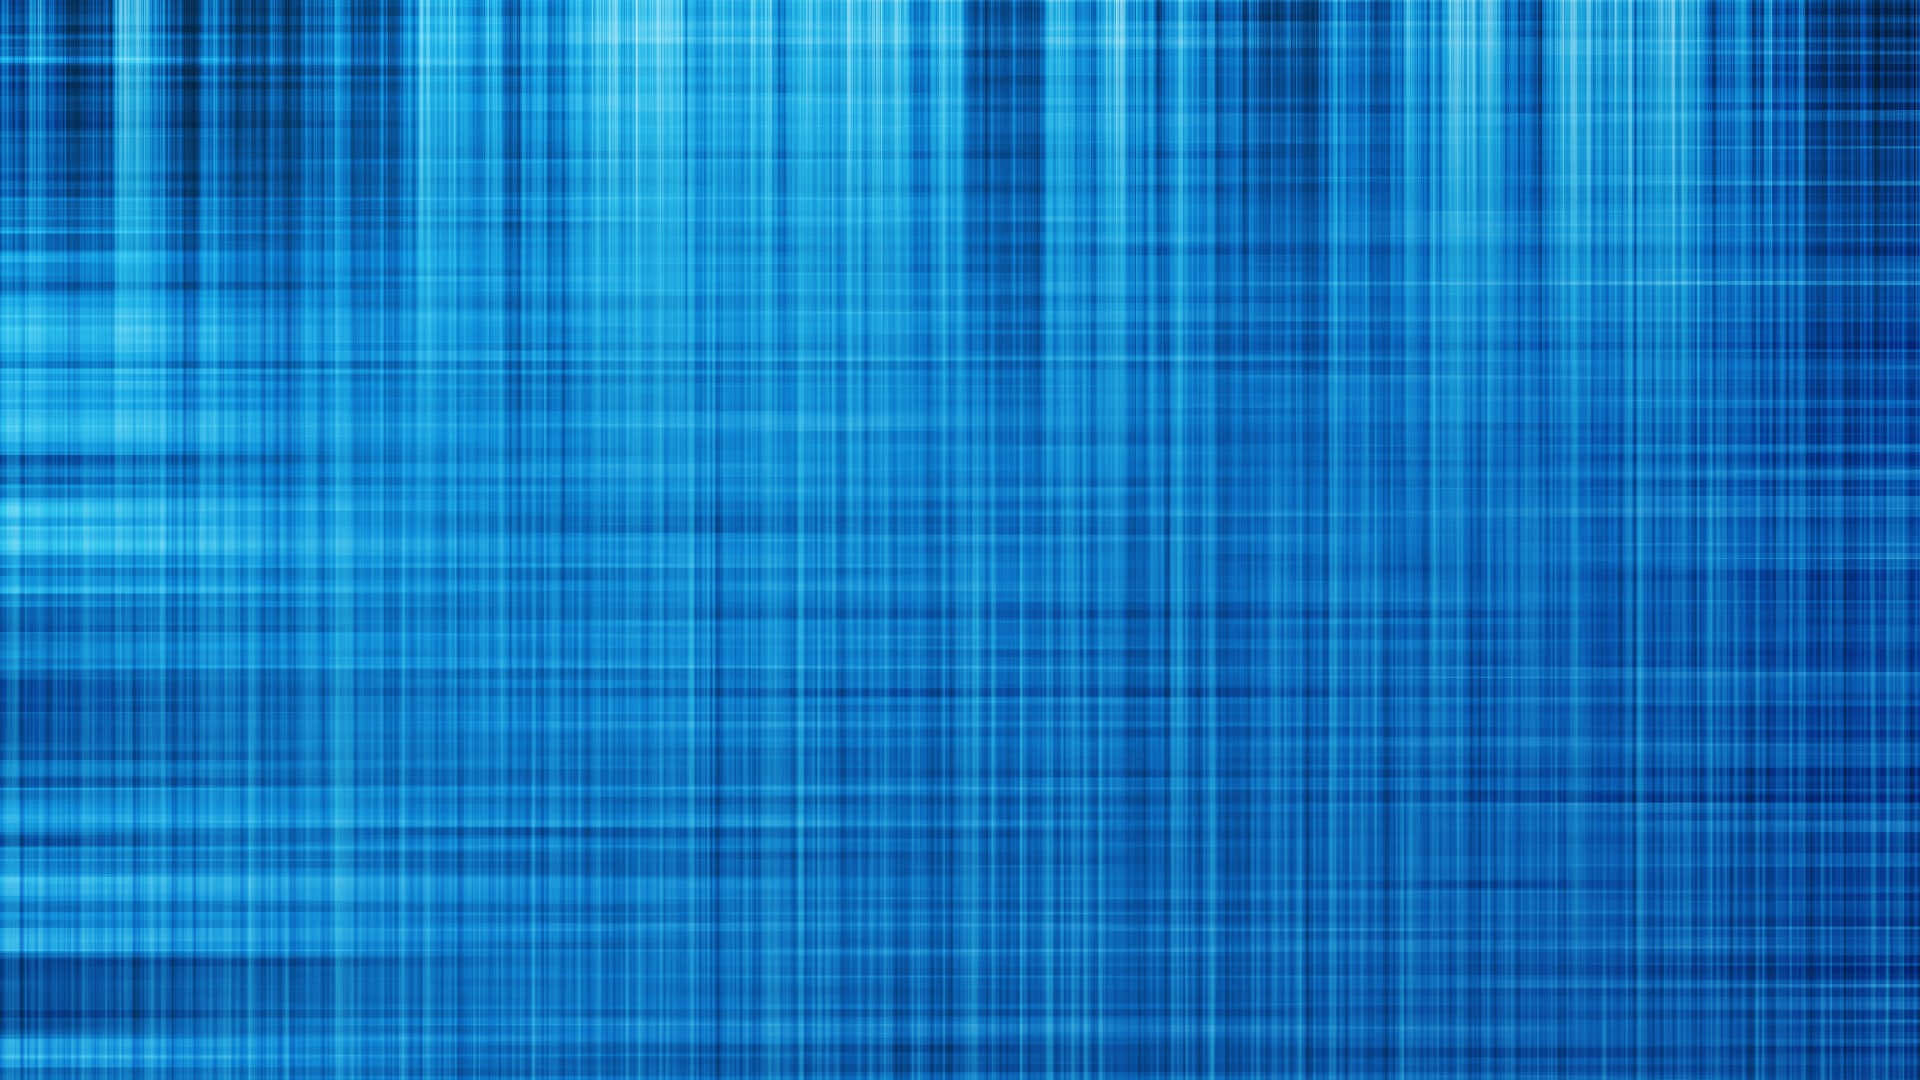 Imágenesen Textura Azul En Alta Resolución 4k.